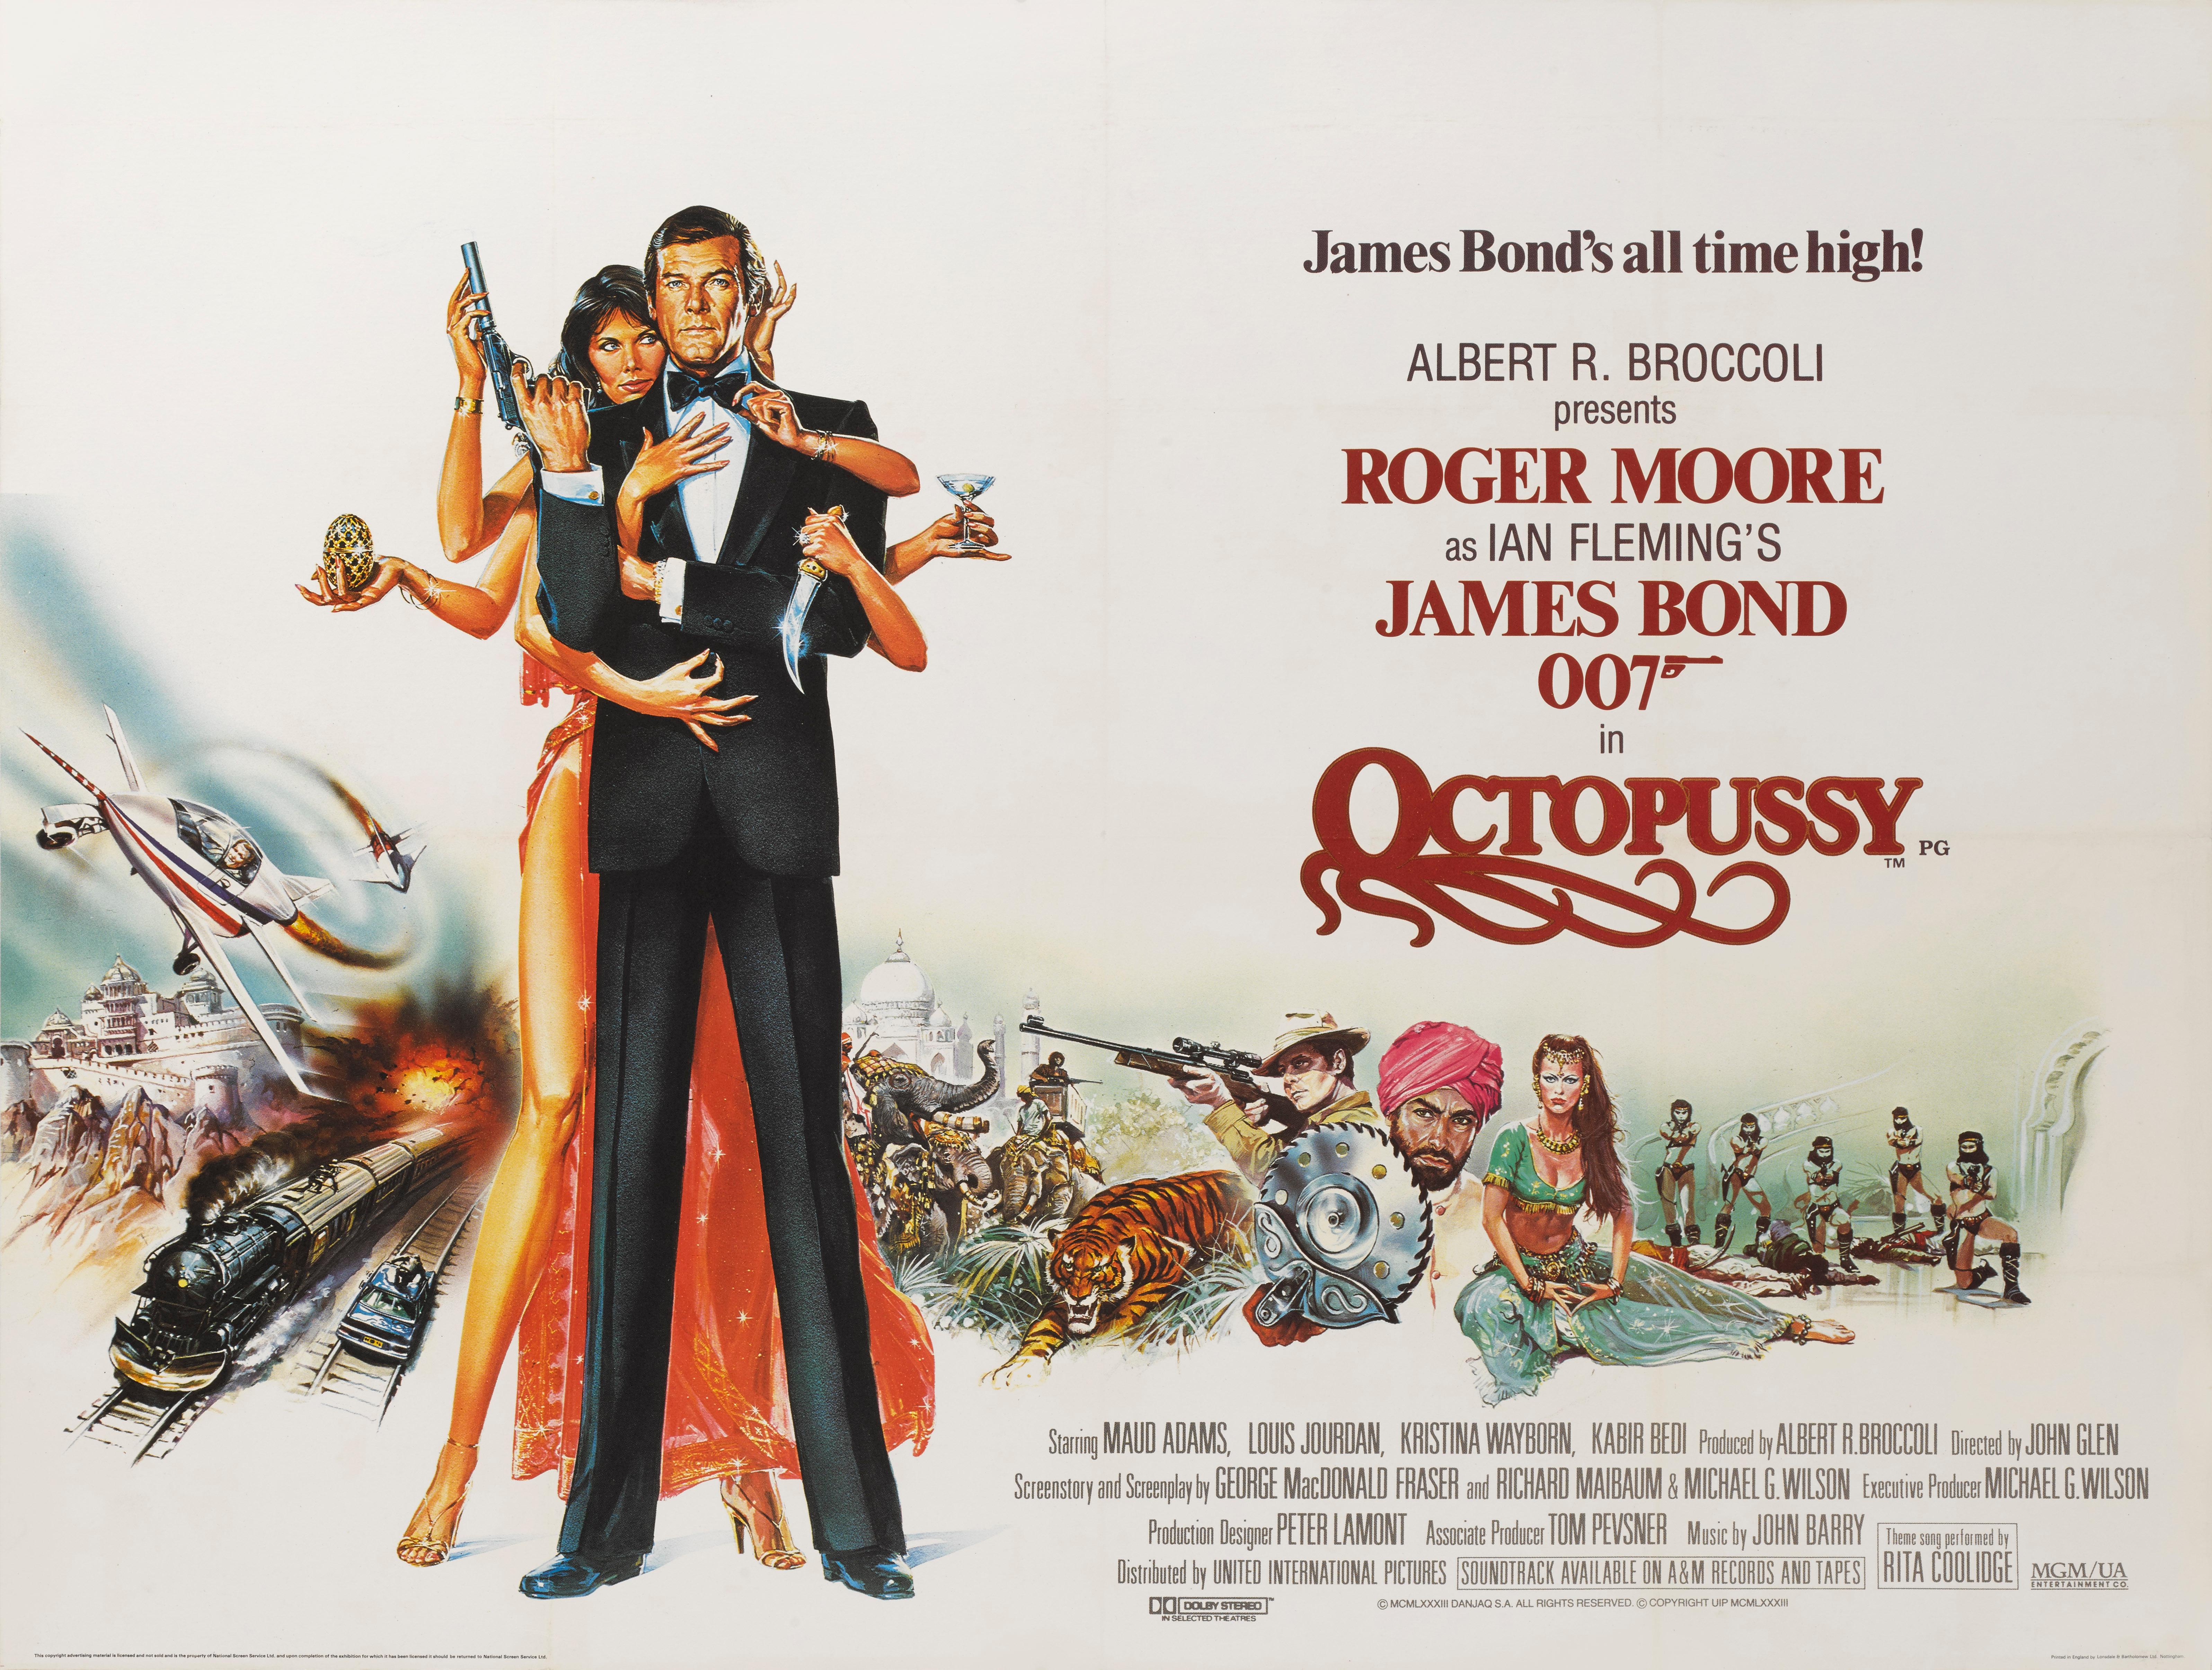 Affiche britannique originale du film Octopussy de James Bond (1983).
Il s'agit du treizième film de la série James Bond produit par Eon Productions, et du sixième film dans lequel Roger Moore incarne James Bond. Il a été réalisé par John Glen, et